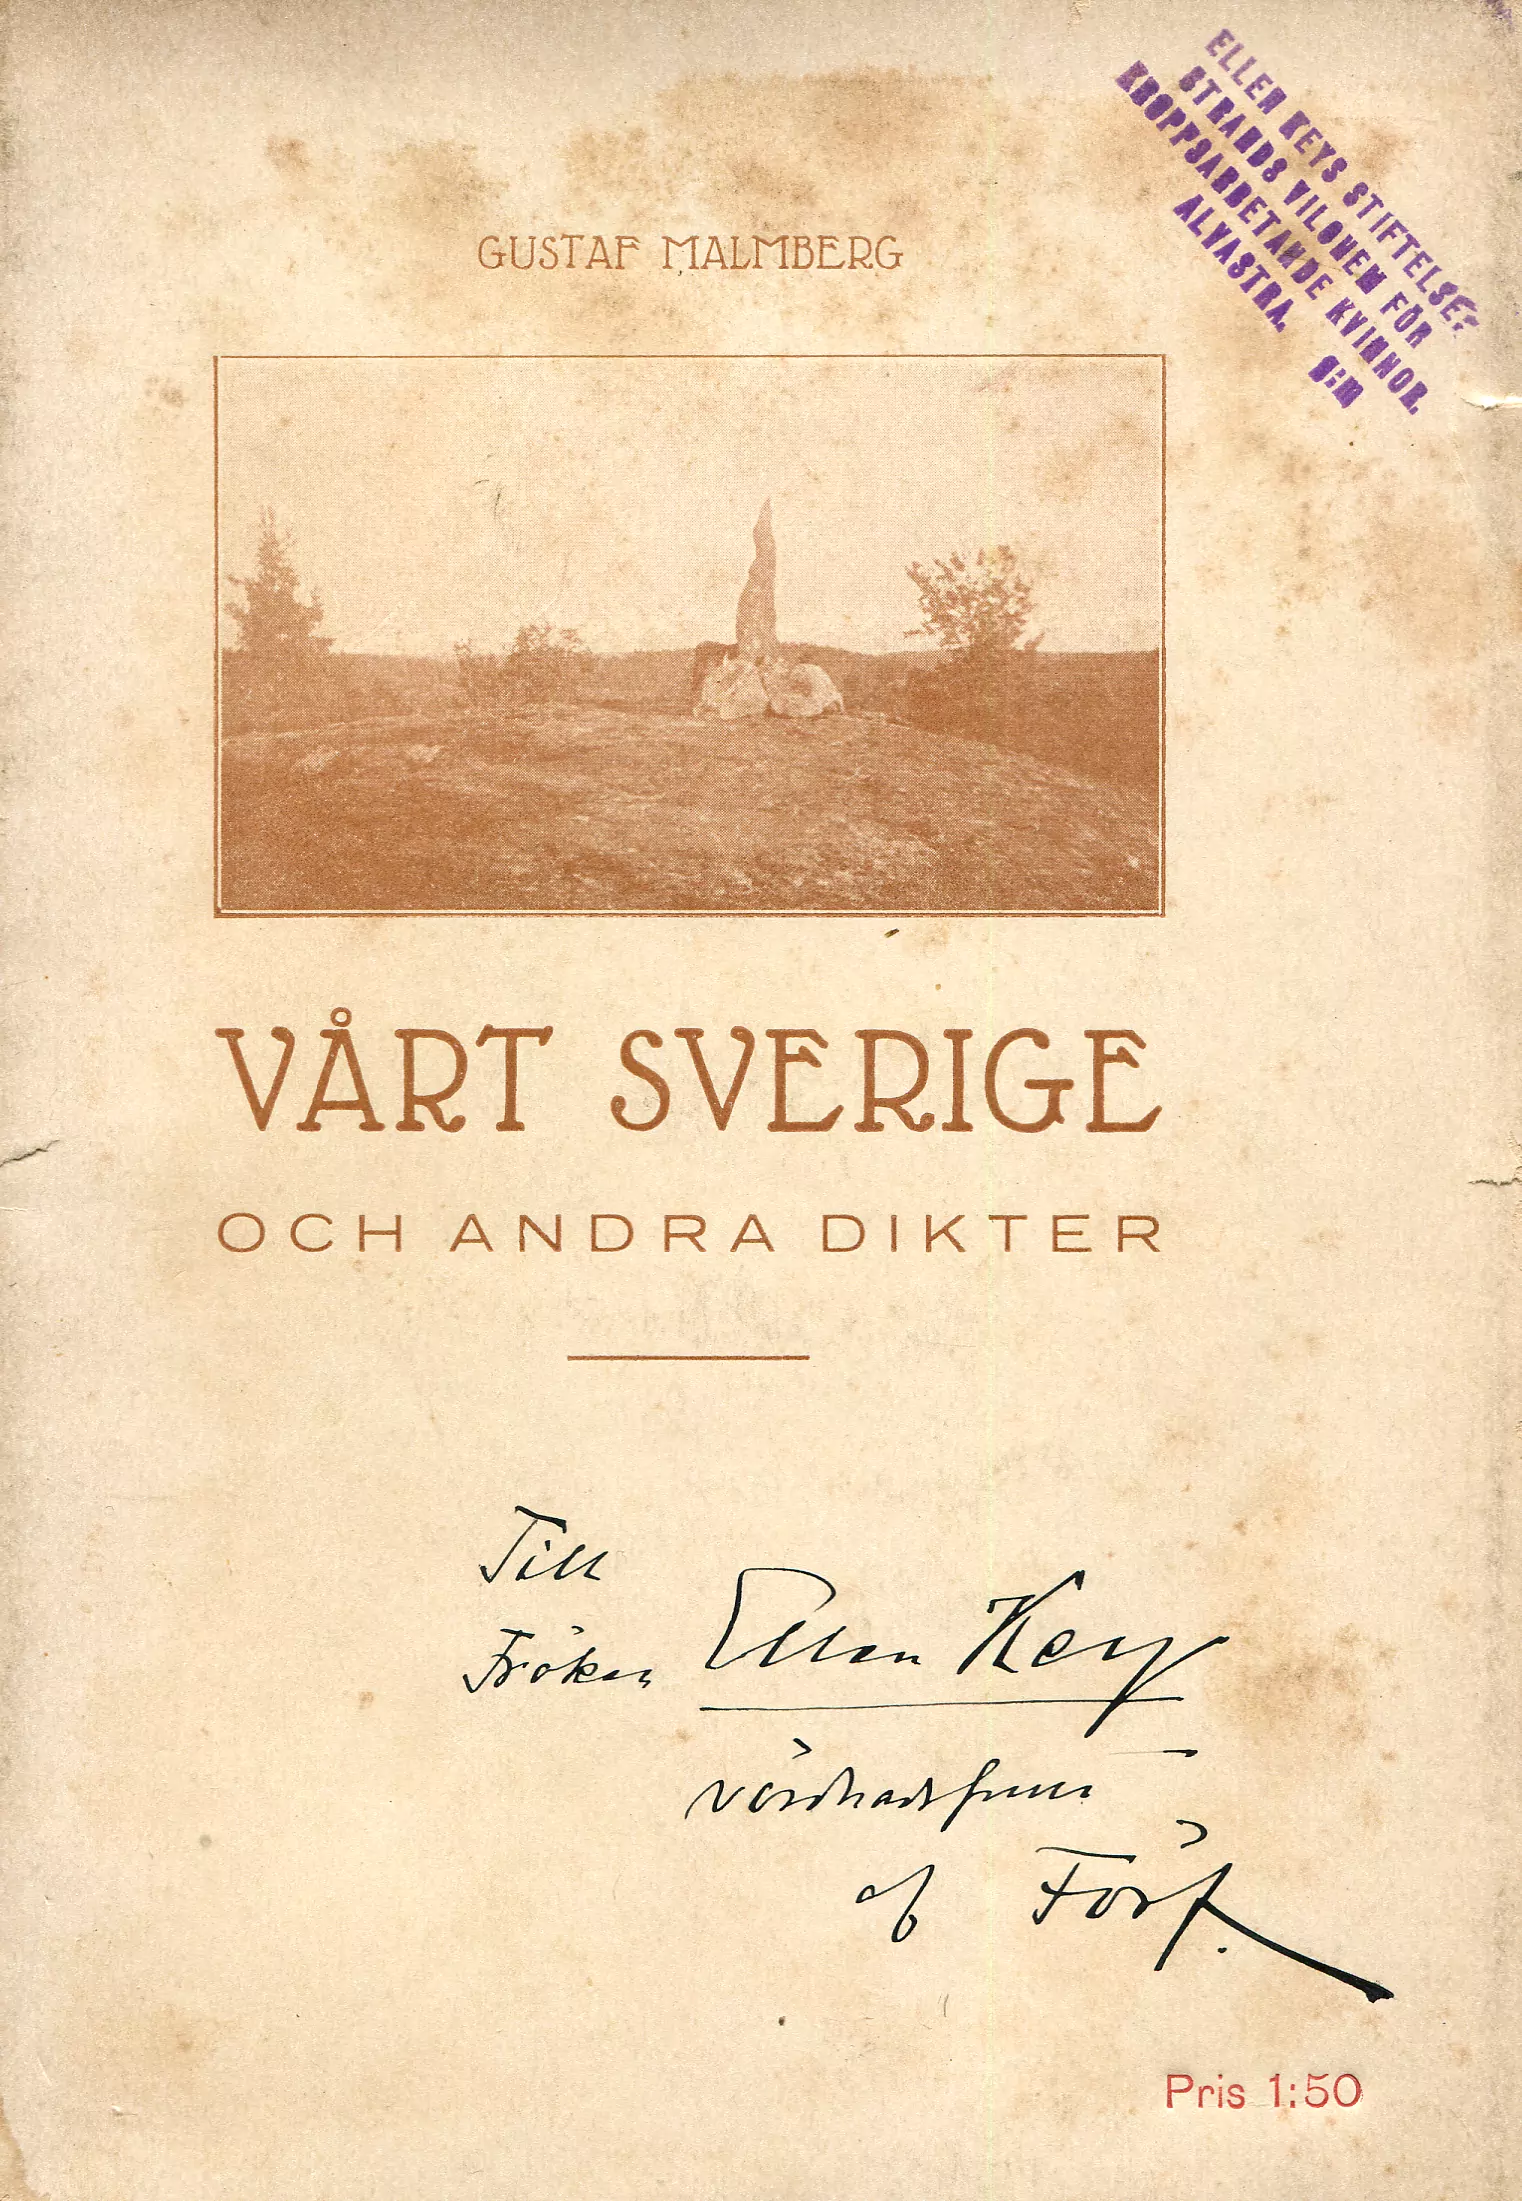 Vårt Sverige och andra dikter, Norrköping 1914